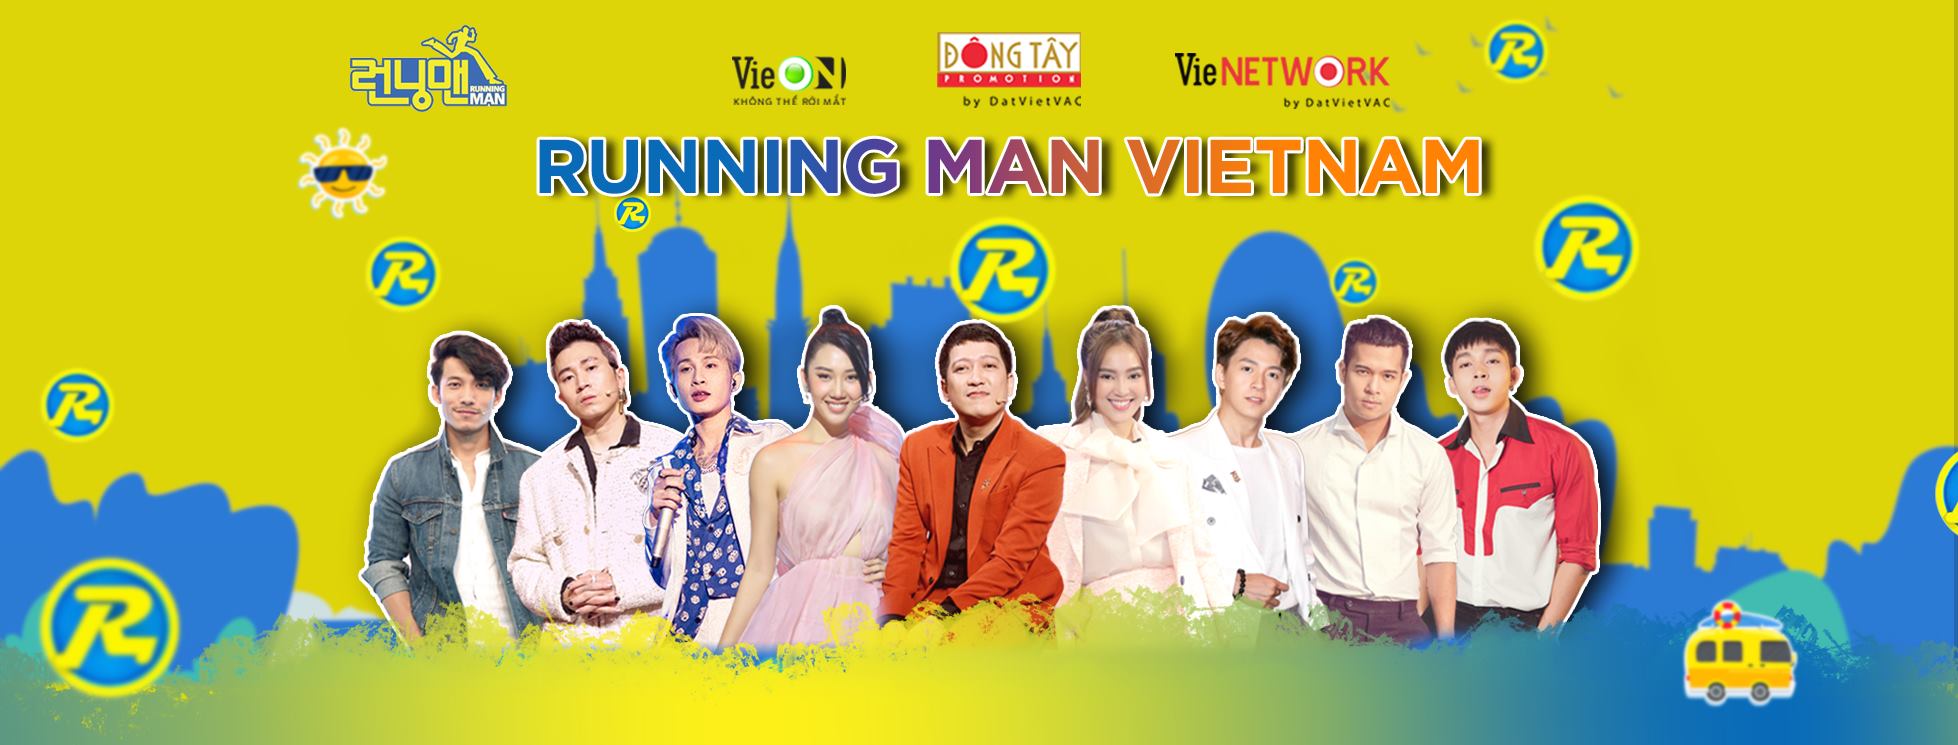 'Running Man Viet Nam' mùa 2 công bố tên mới 'Chơi là chạy', thay thế tên 'Chạy đi chờ chi' ở mùa 1 - ảnh 1